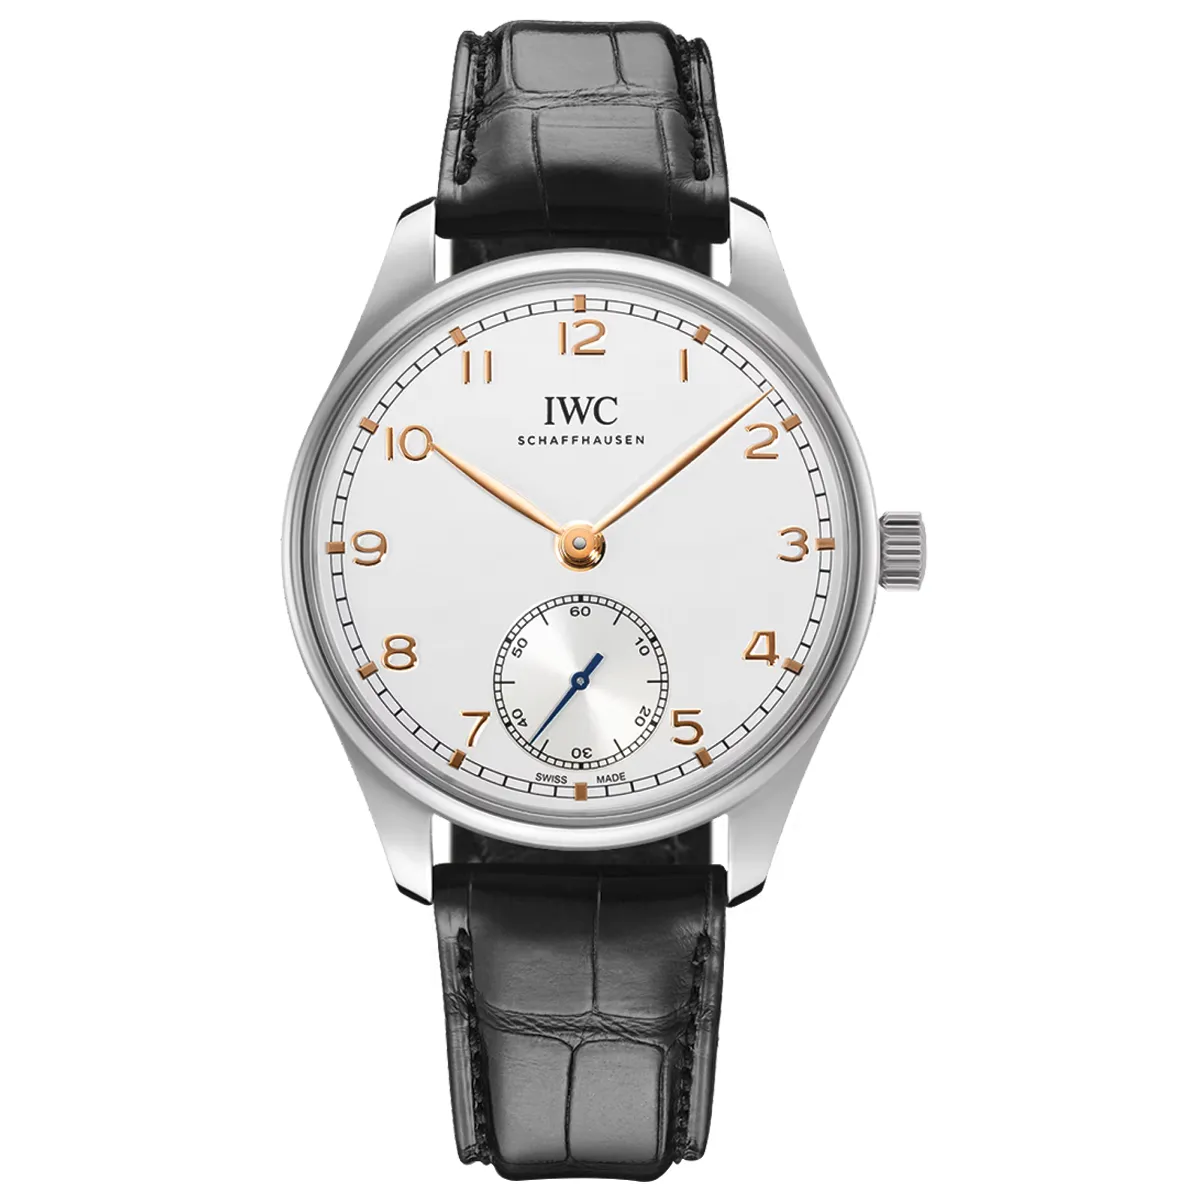 Đồng hồ IWC Portugieser Automatic IW358303 mặt số màu bạc. Dây đeo bằng da. Thân vỏ bằng thép.